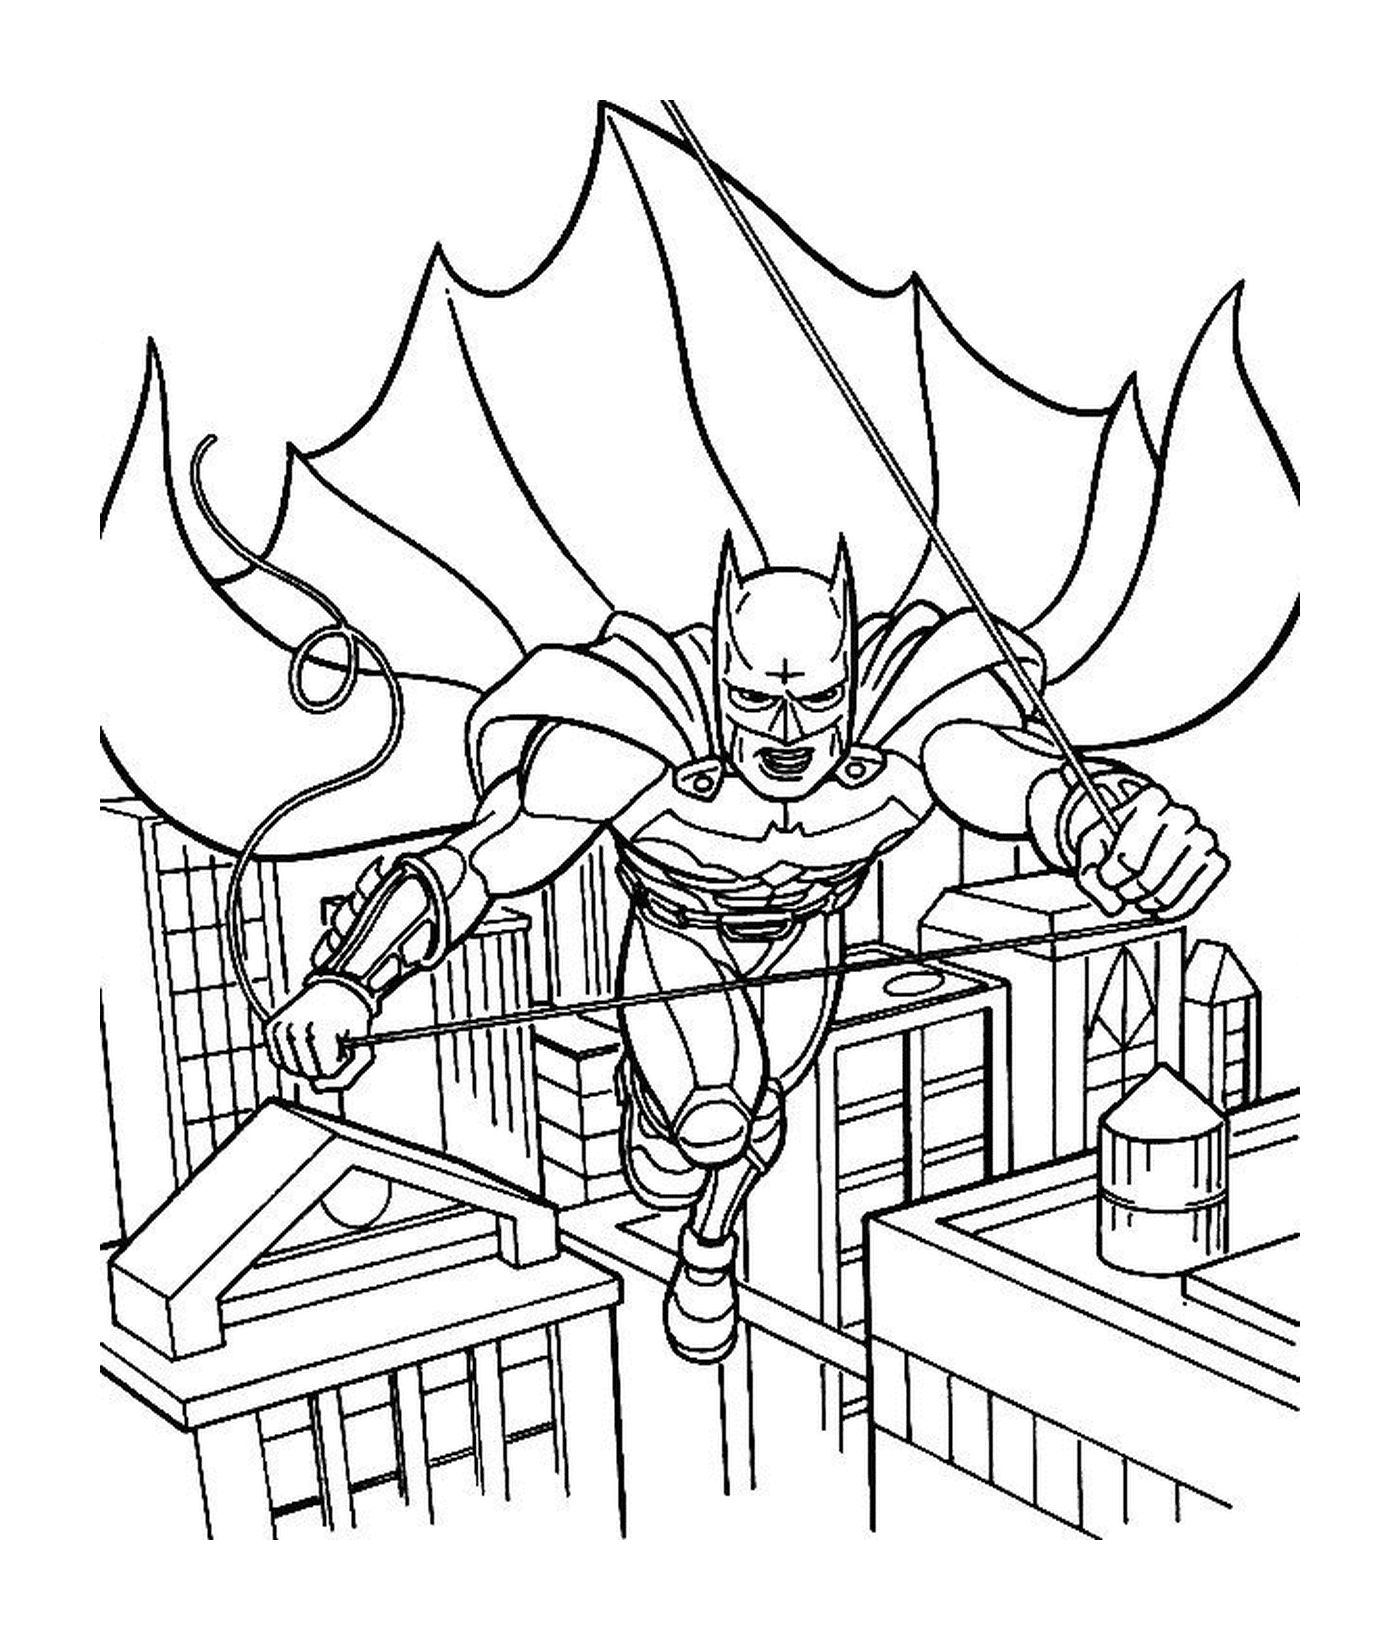  Batman fliegt in der Luft 